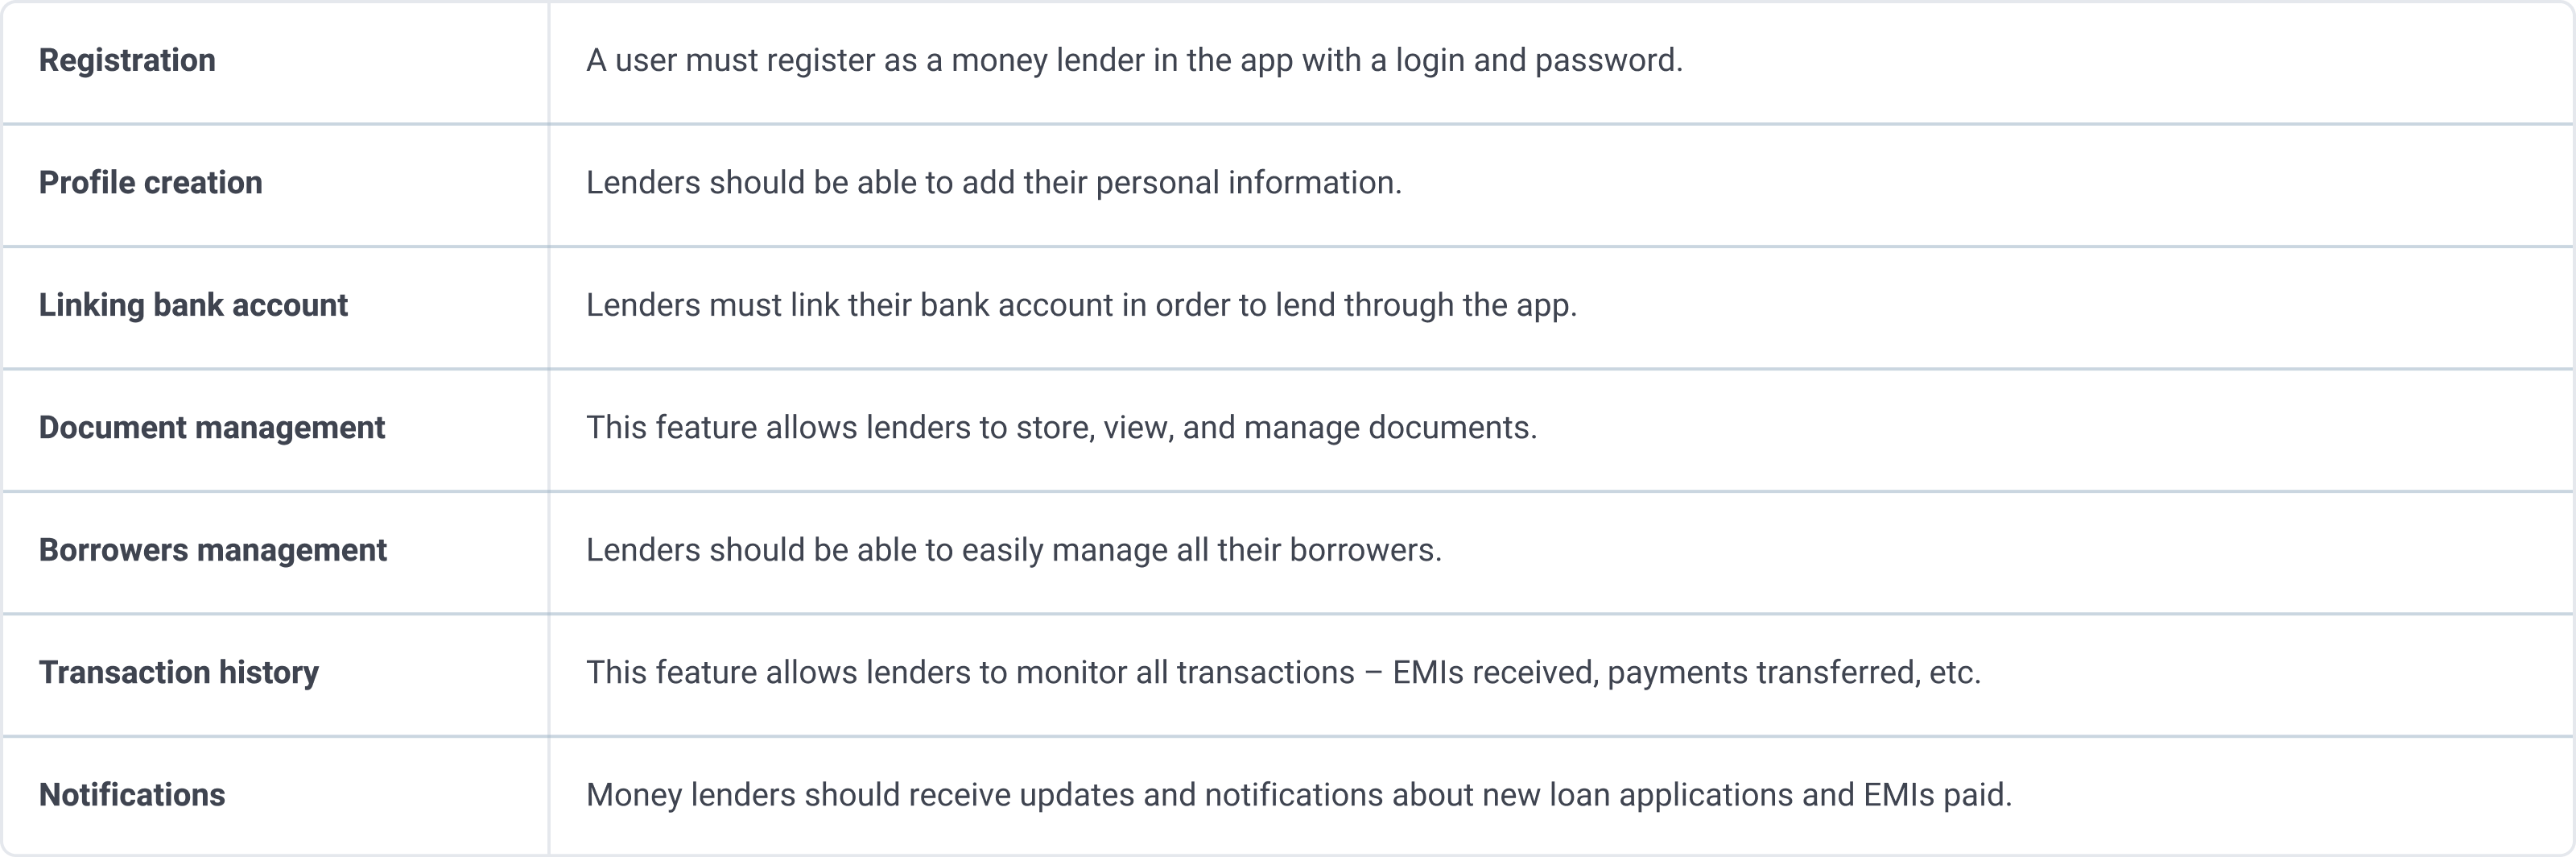 p2p lending features